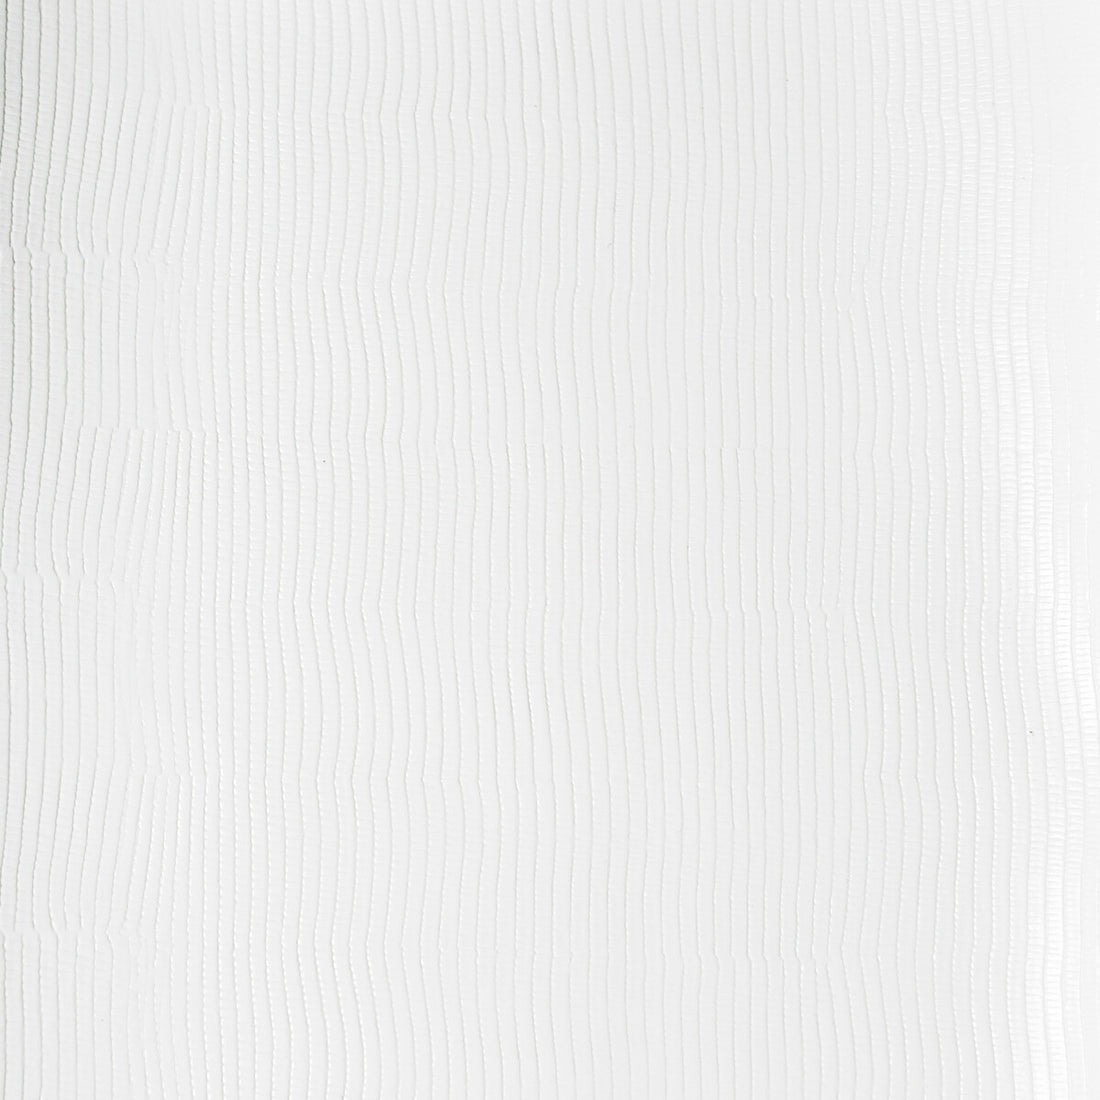 Kravet Design fabric in vela-1 color - pattern VELA.1.0 - by Kravet Design